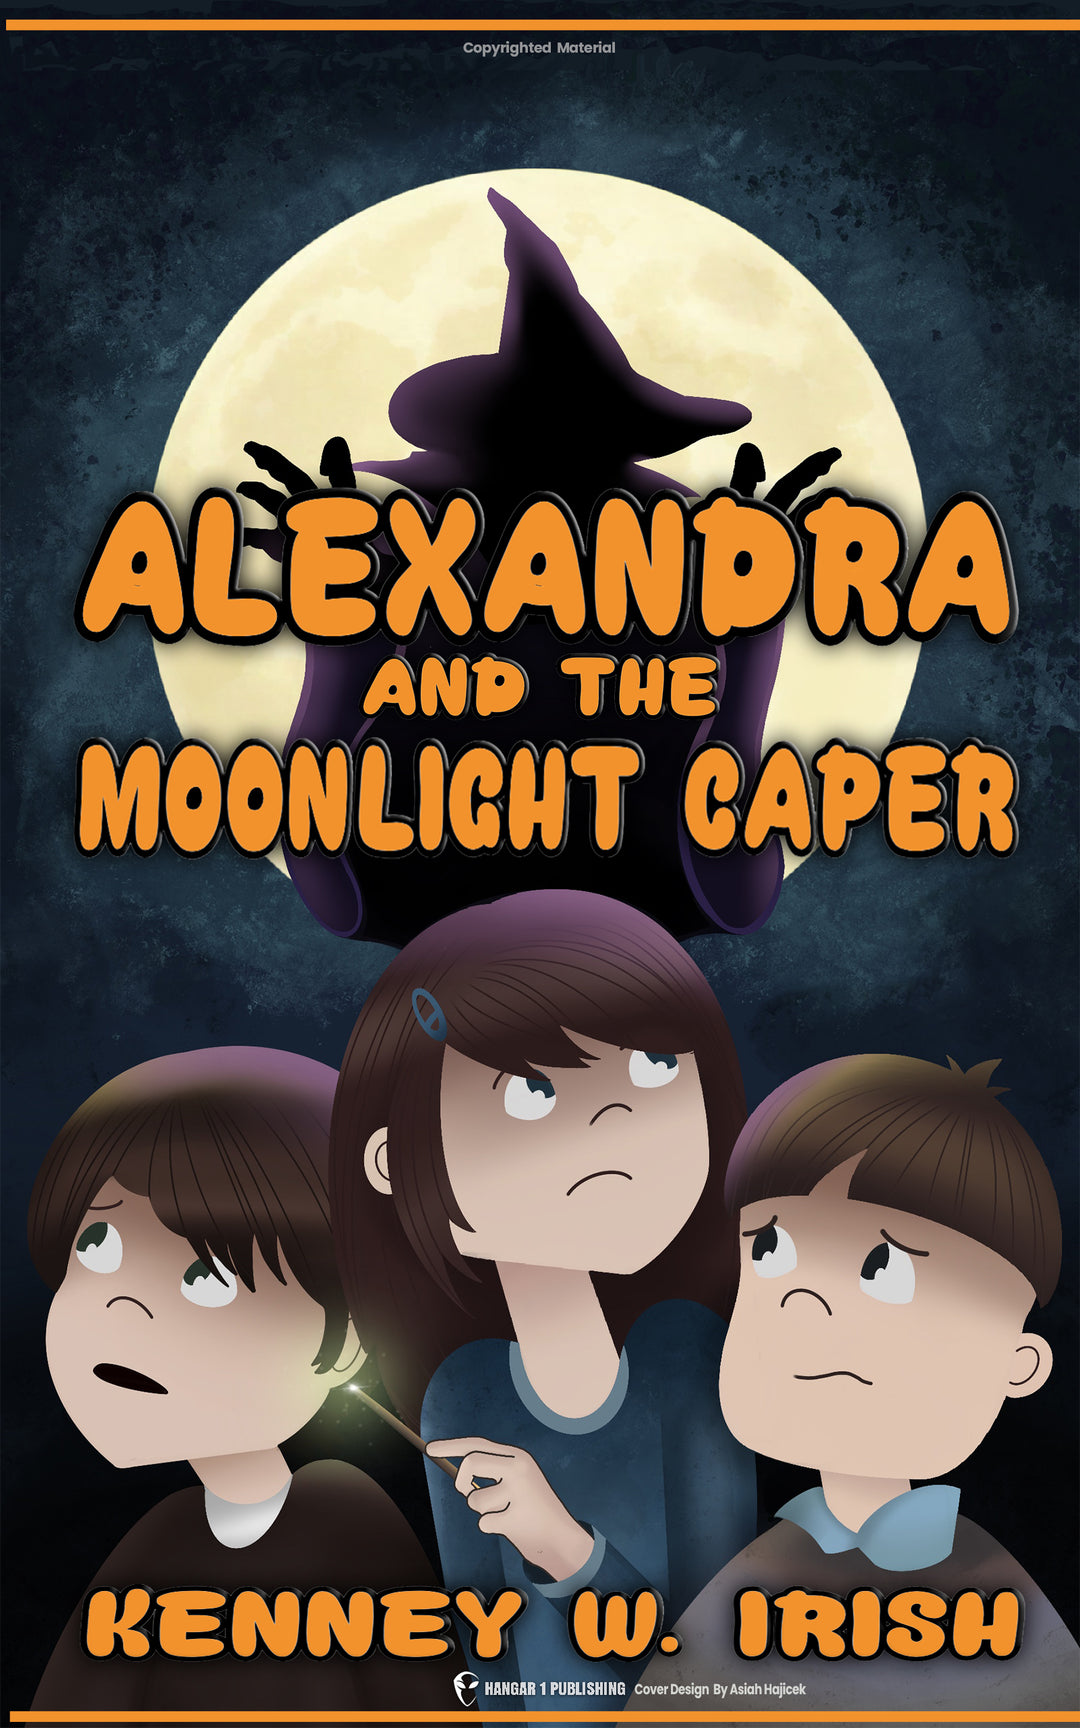 Alexandra and the Moonlight Caper